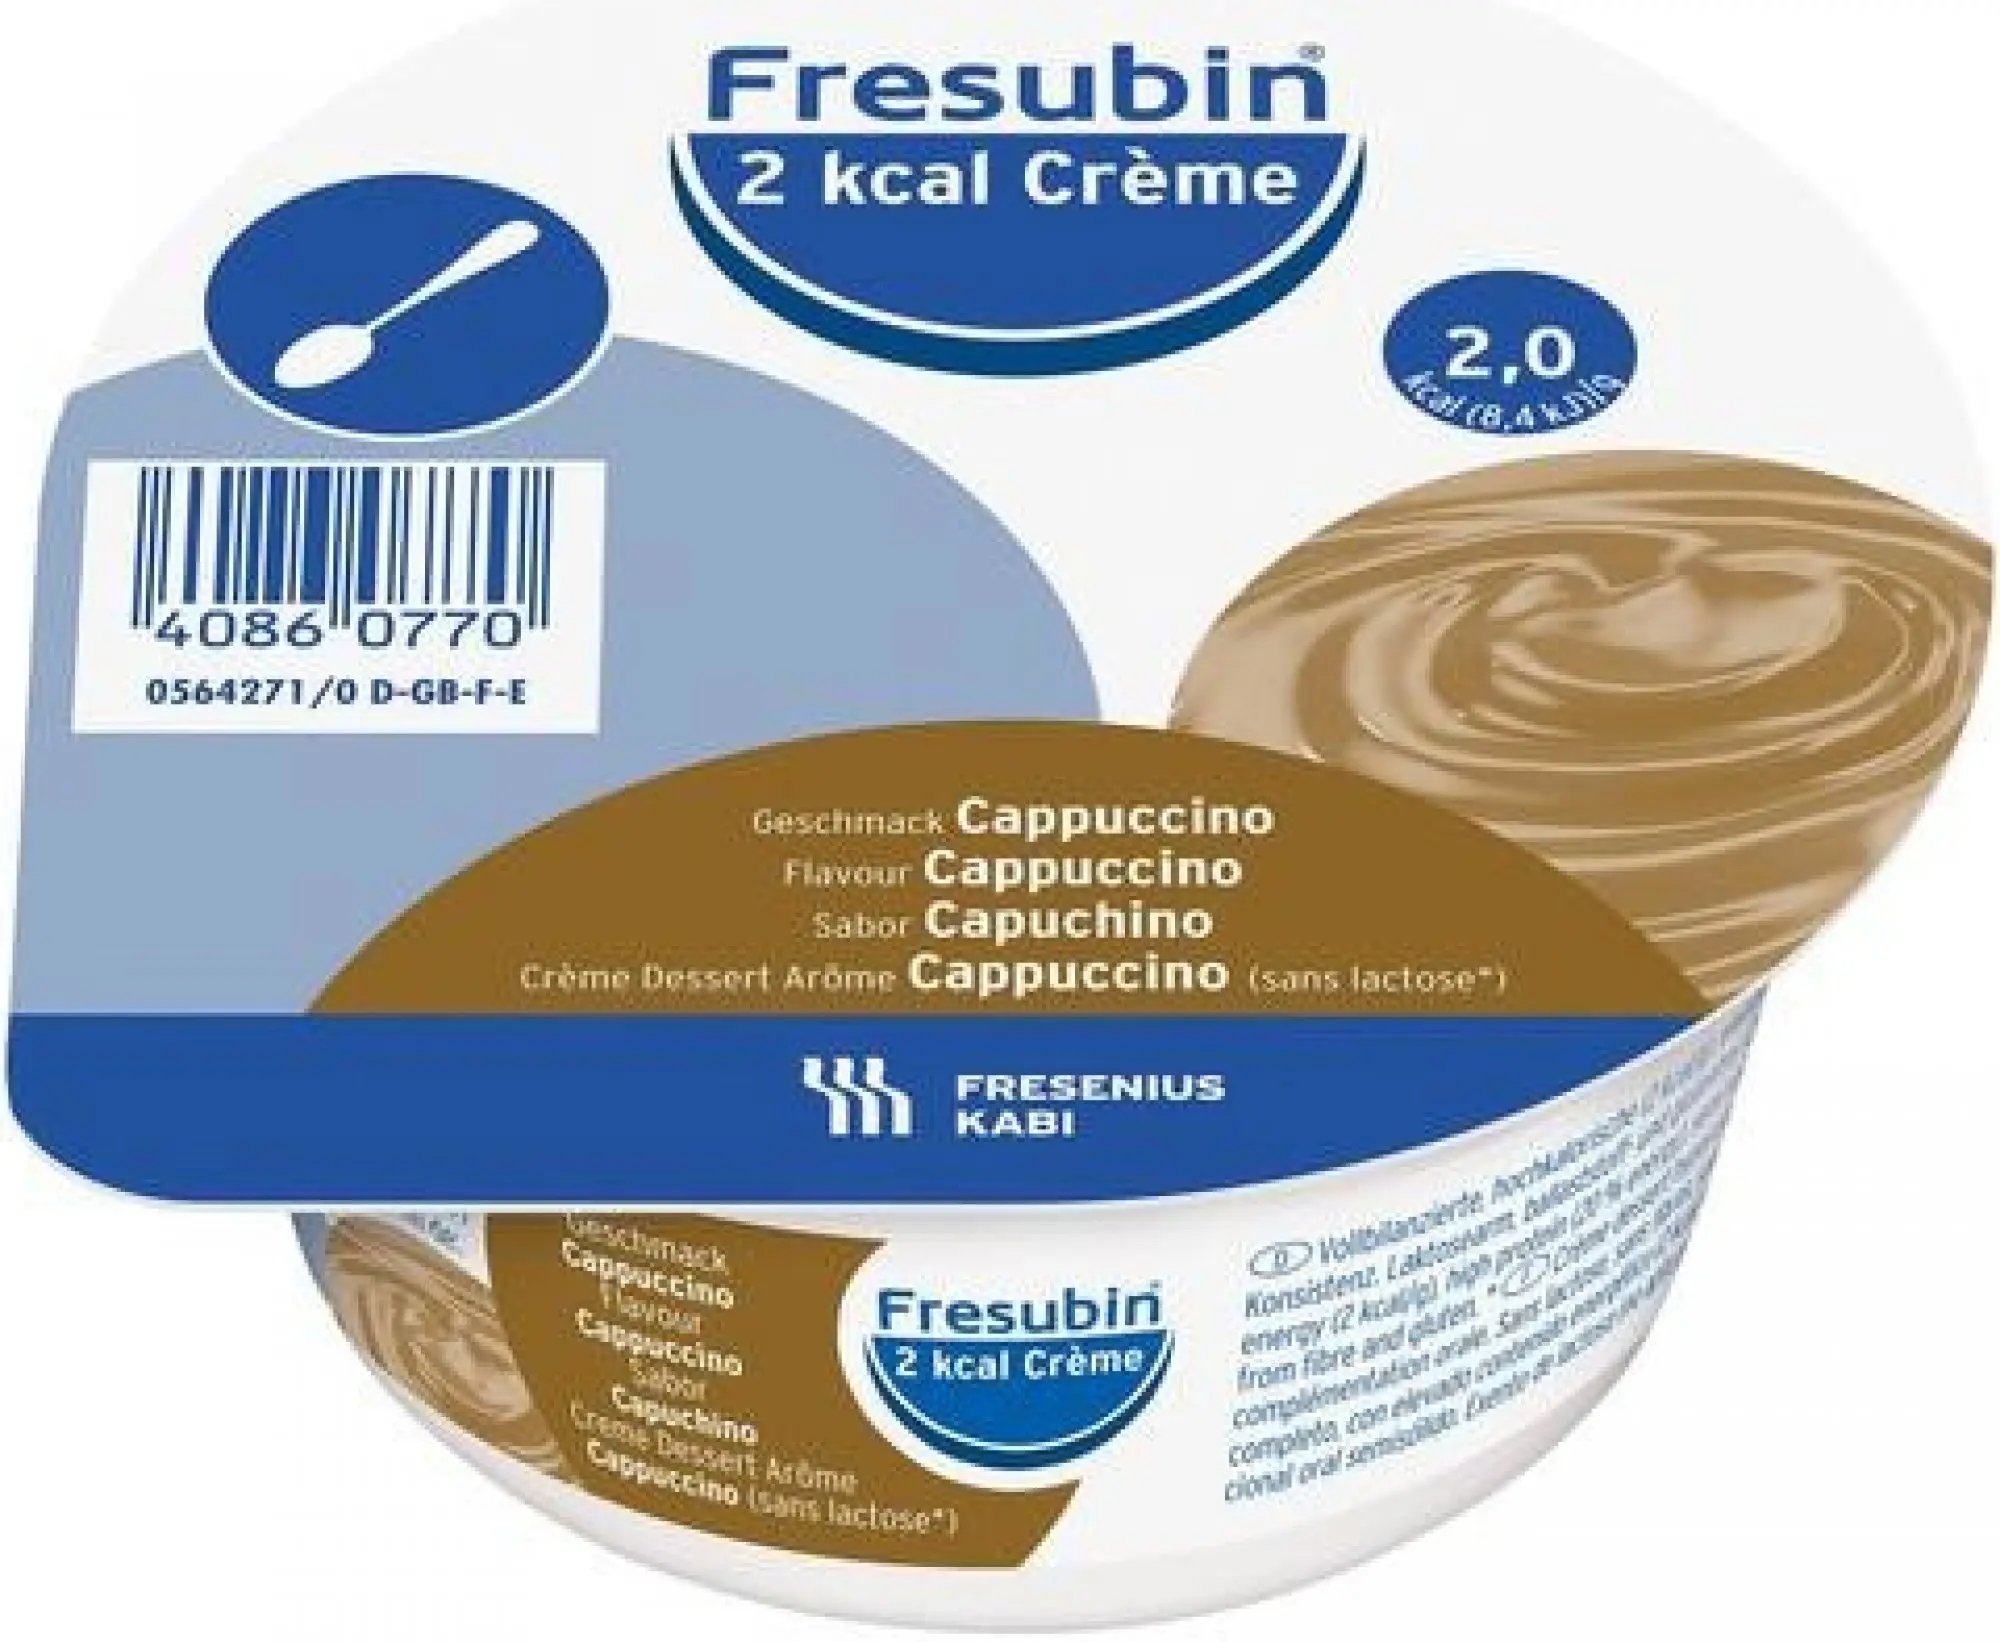 Fresubin 2 kcal Creme Cappuccino por.sol. 4 x 125 g